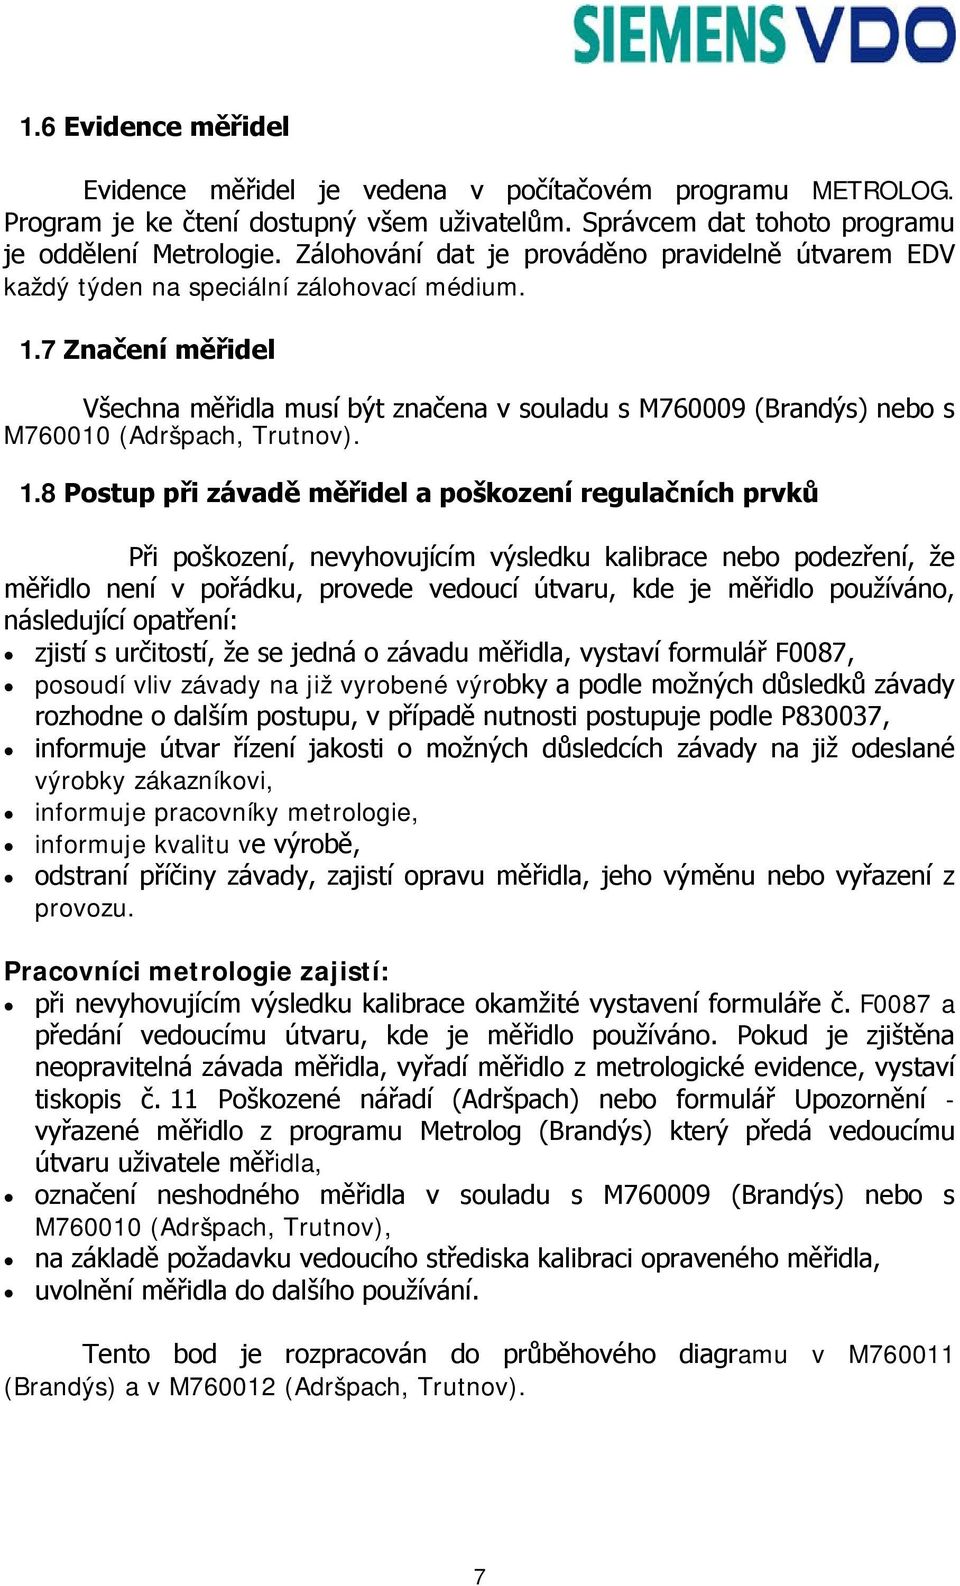 7 Značení měřidel Všechna měřidla musí být značena v souladu s M760009 (Brandýs) nebo s M760010 (Adršpach, Trutnov). 1.